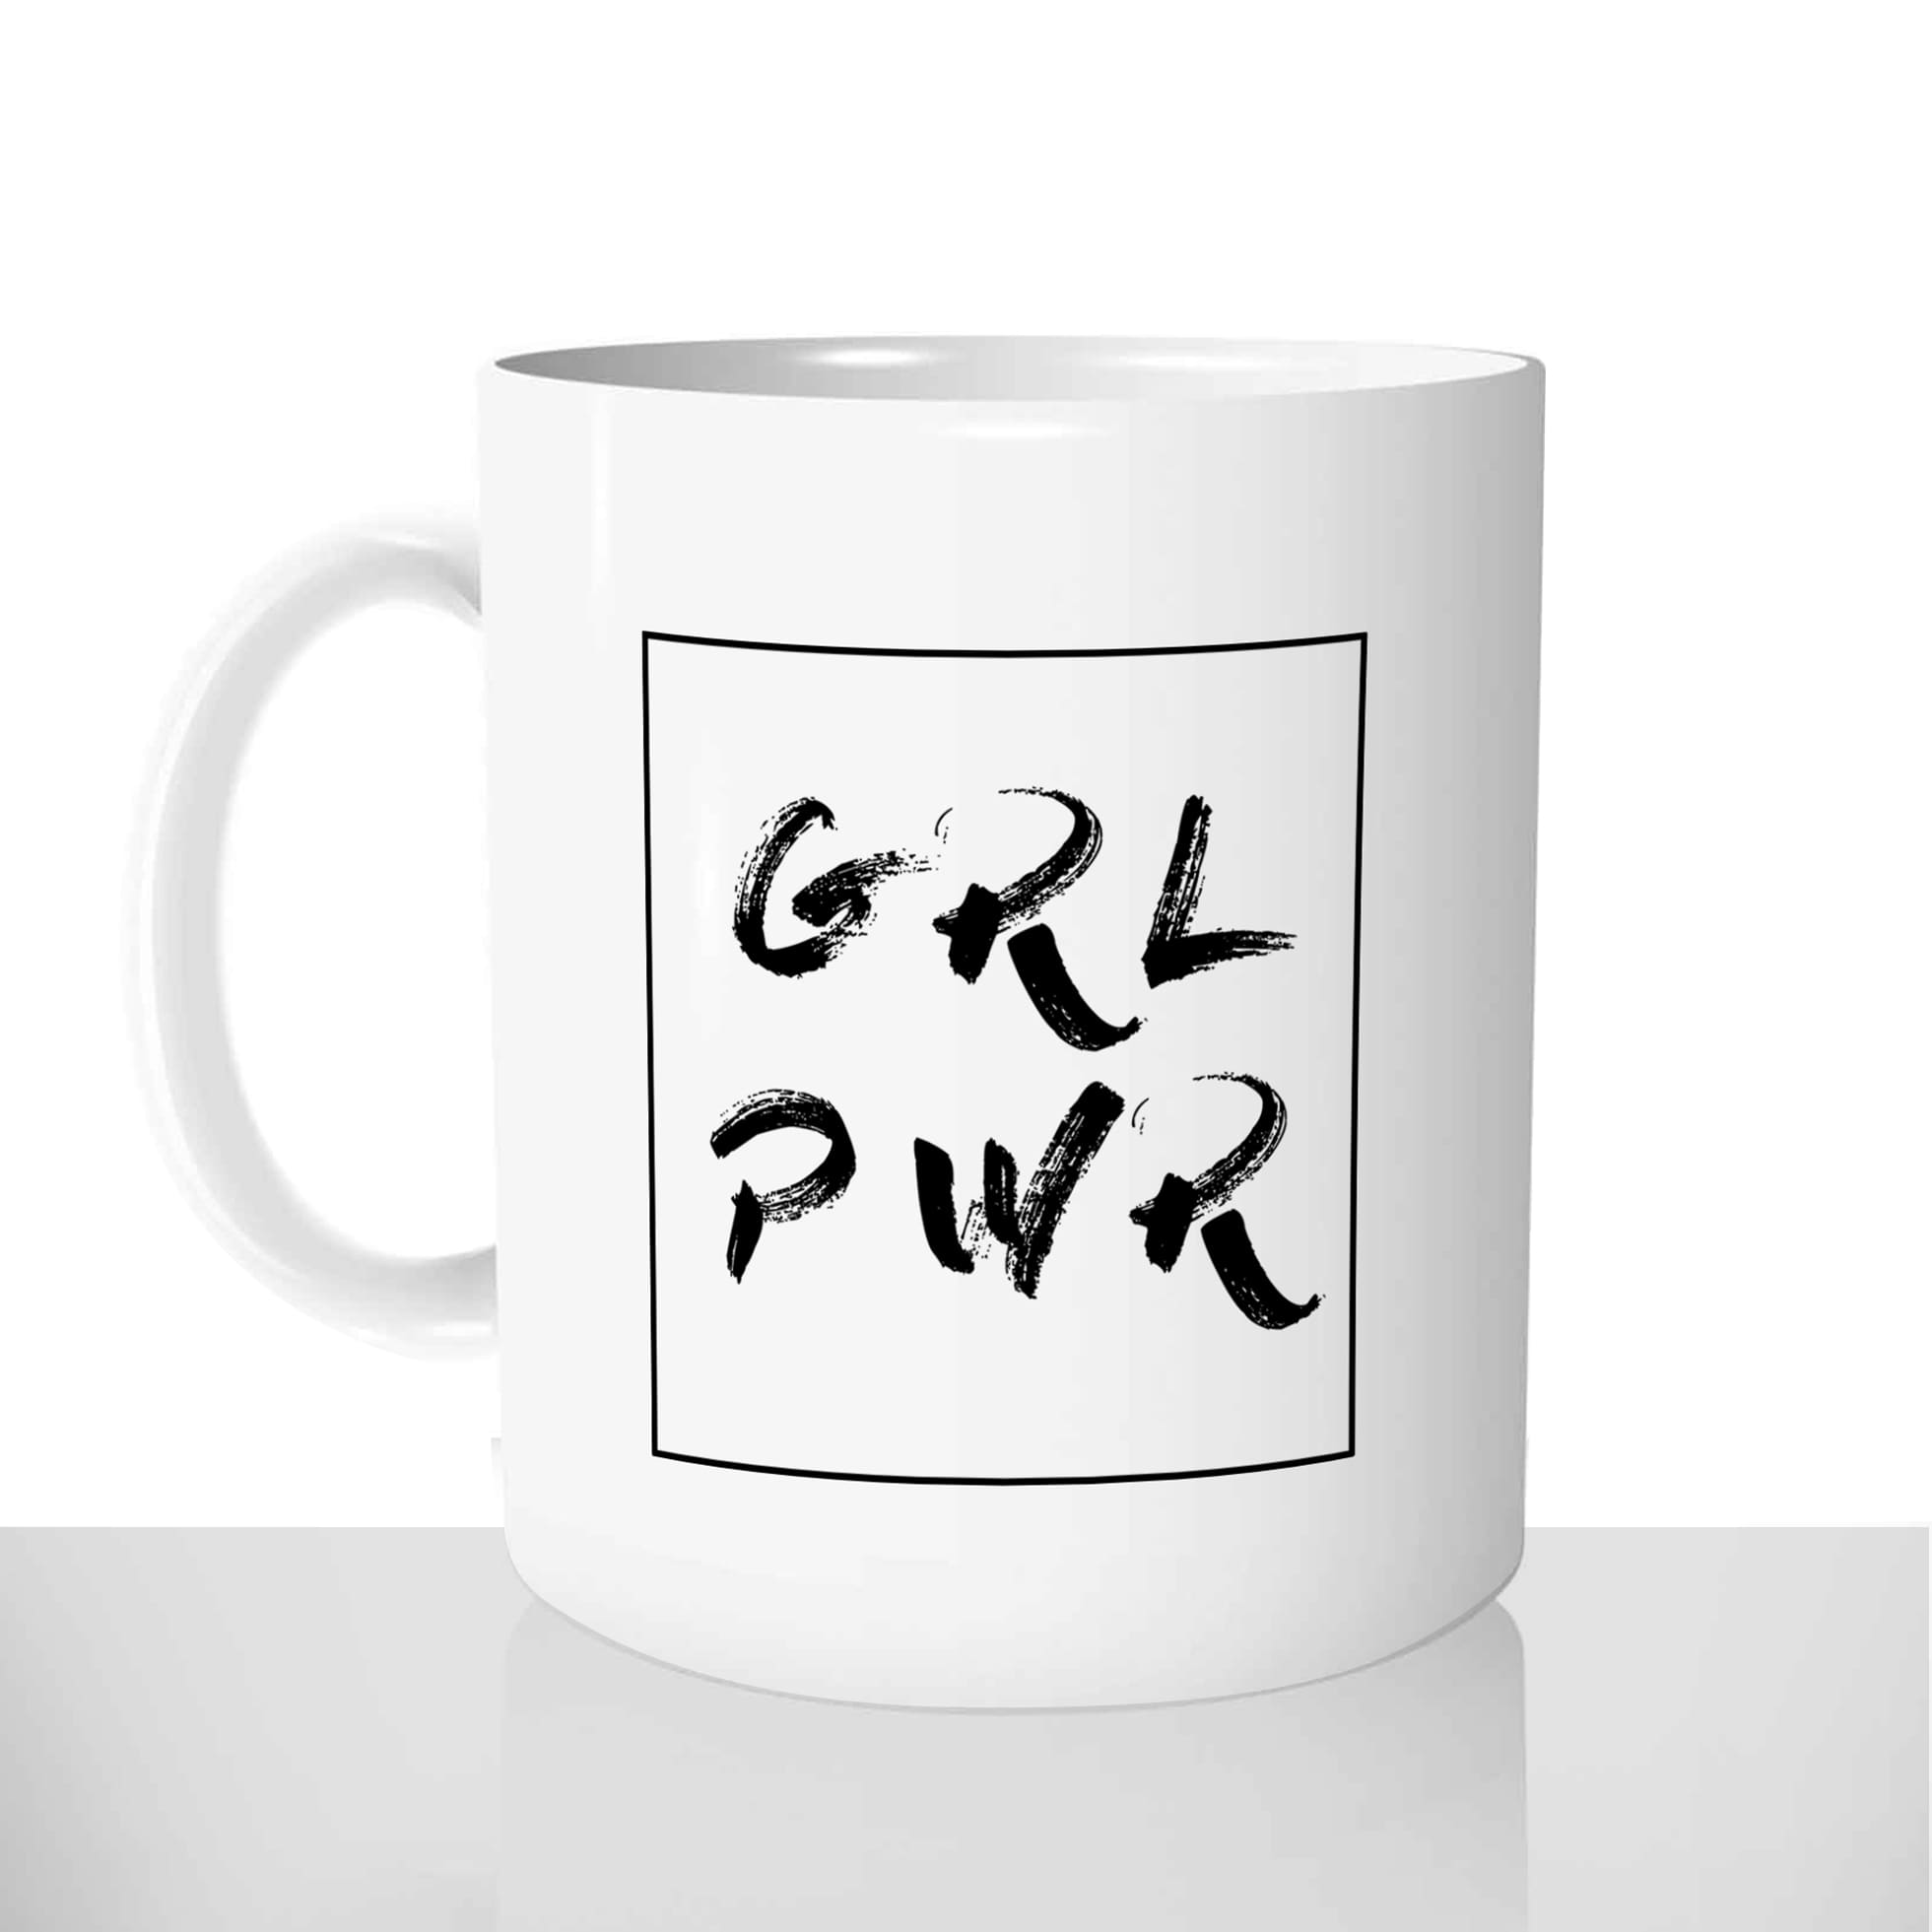 mug classique en céramique 11oz personnalisé personnalisable photo grl pwr girl power femme forte independante feministe offrir cadeau chou